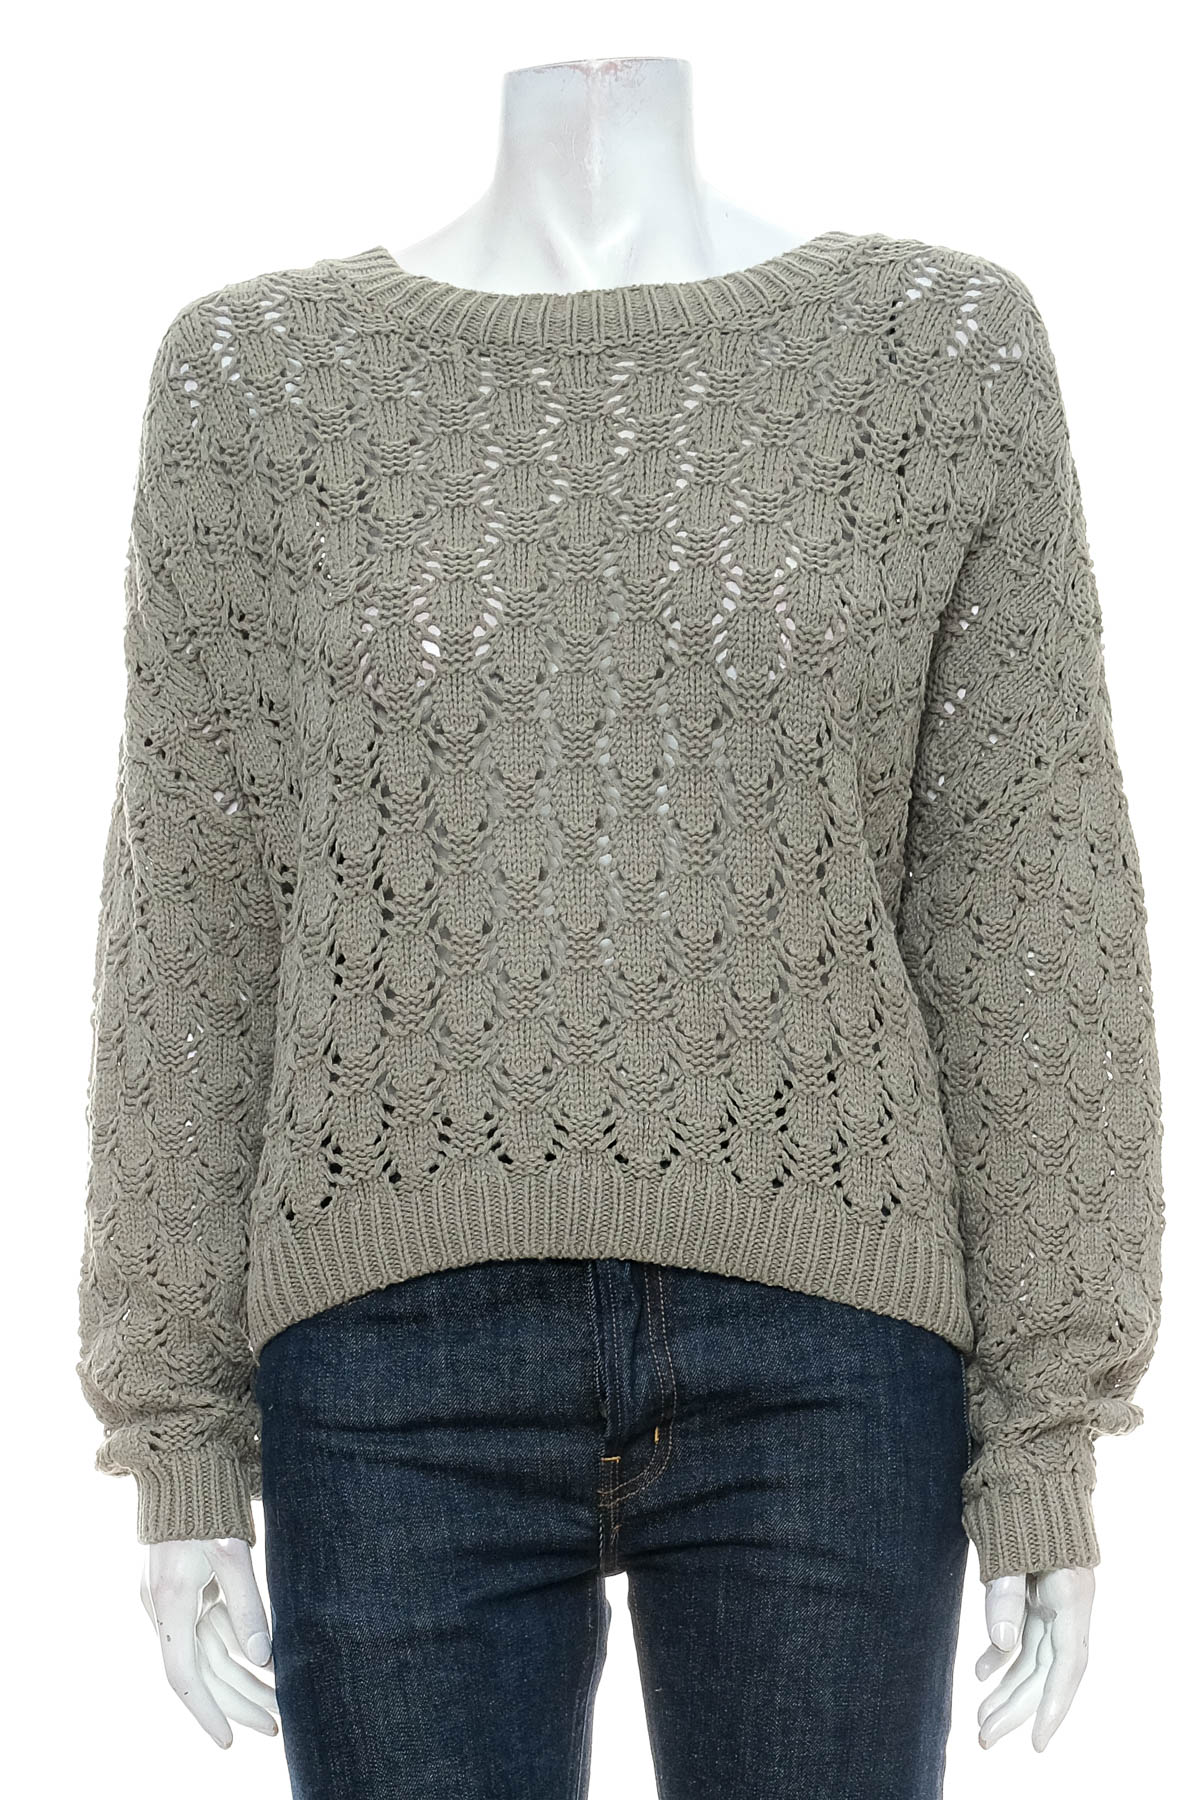 Women's sweater - Miss Shop - 0